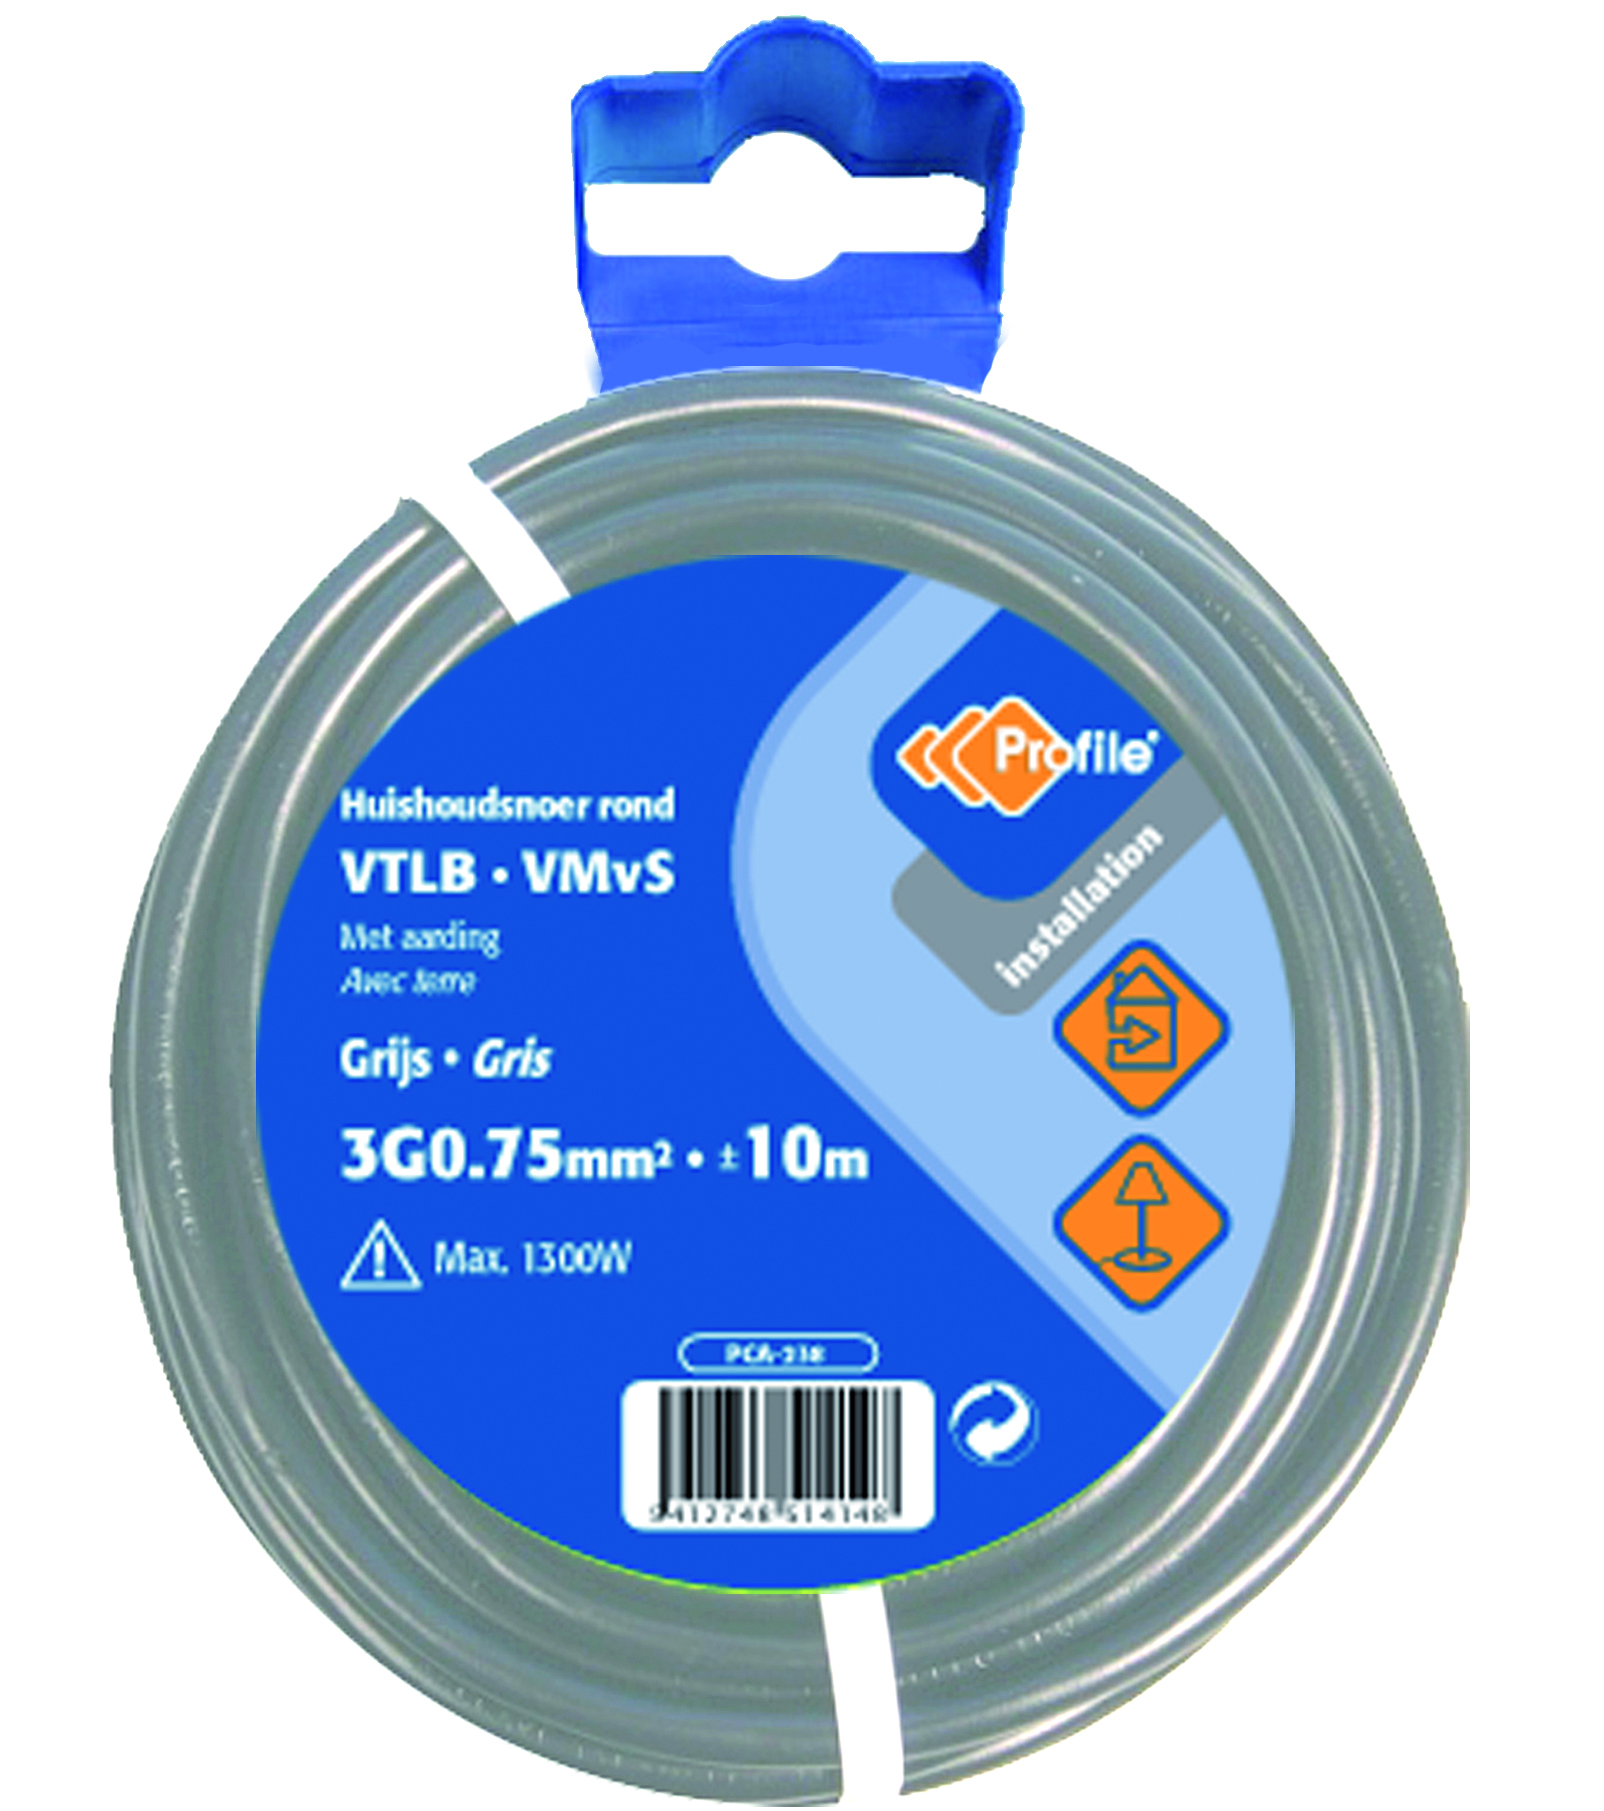 Cable Vtlb 3g0.75mm² Gris 10m